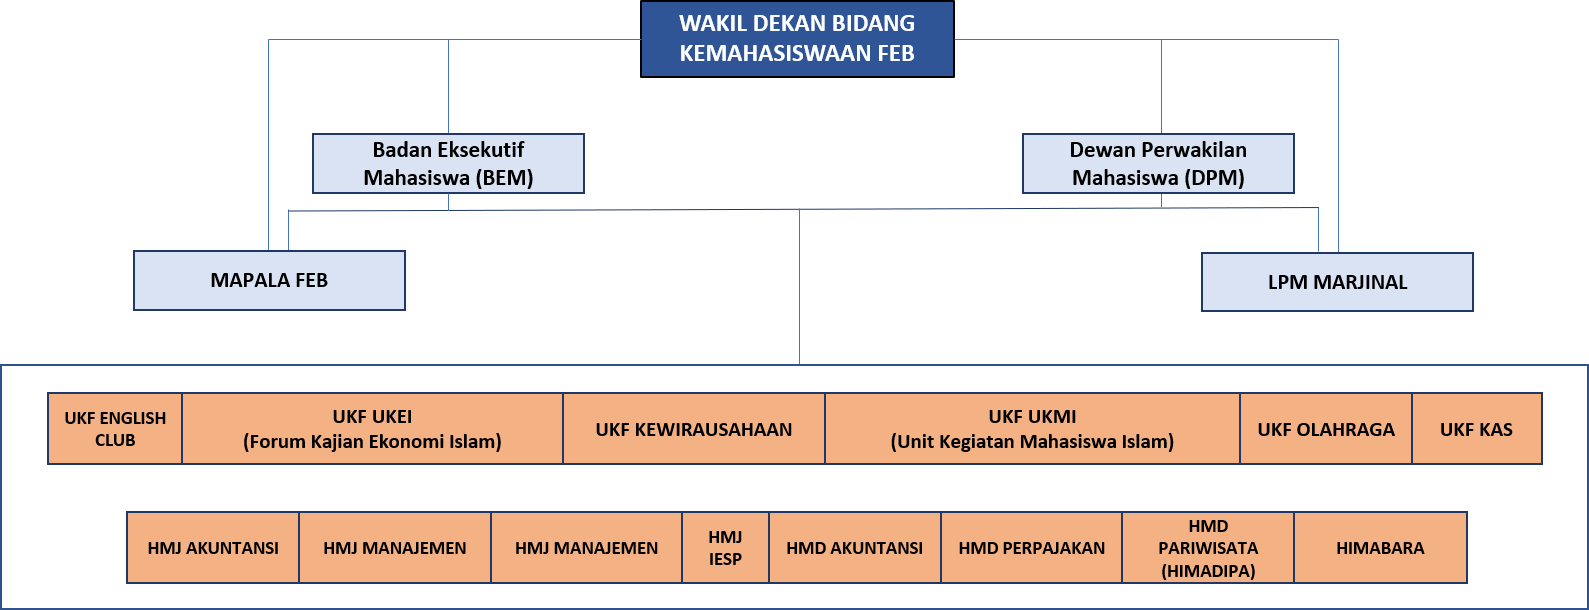 Struktur organisasi kemahasiswaan FEB